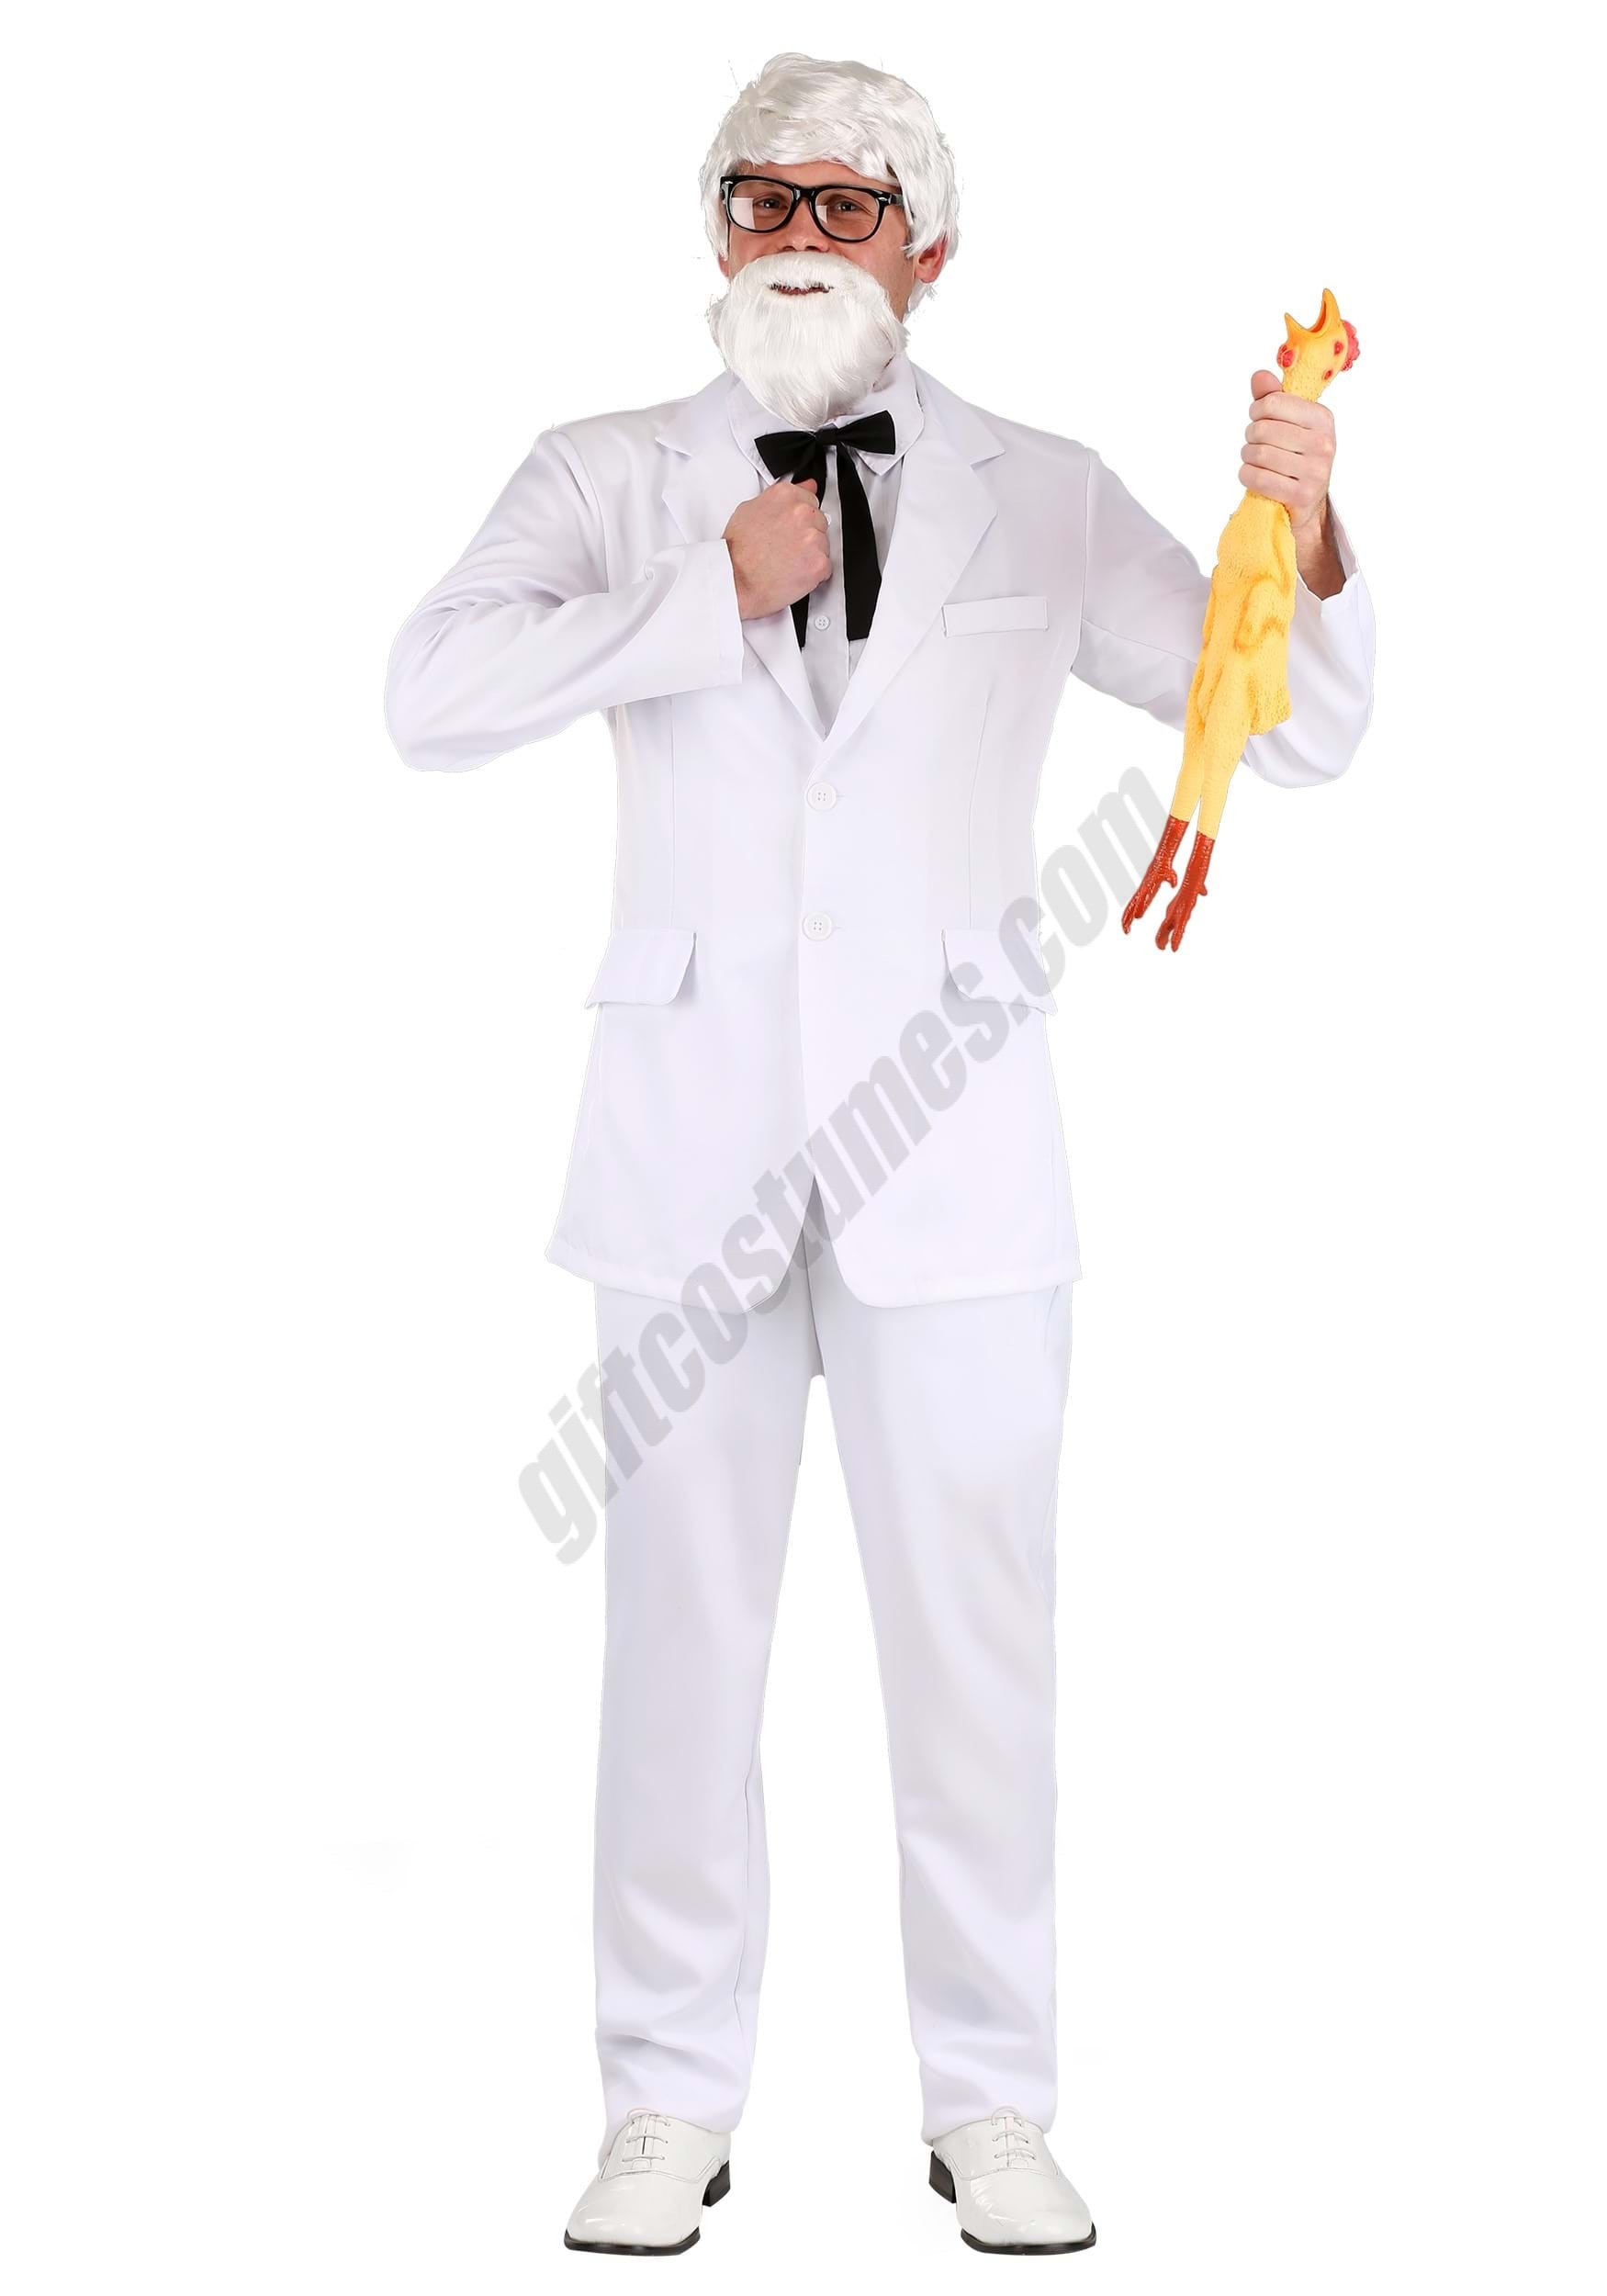 Men's White Suit Costume - Men's White Suit Costume